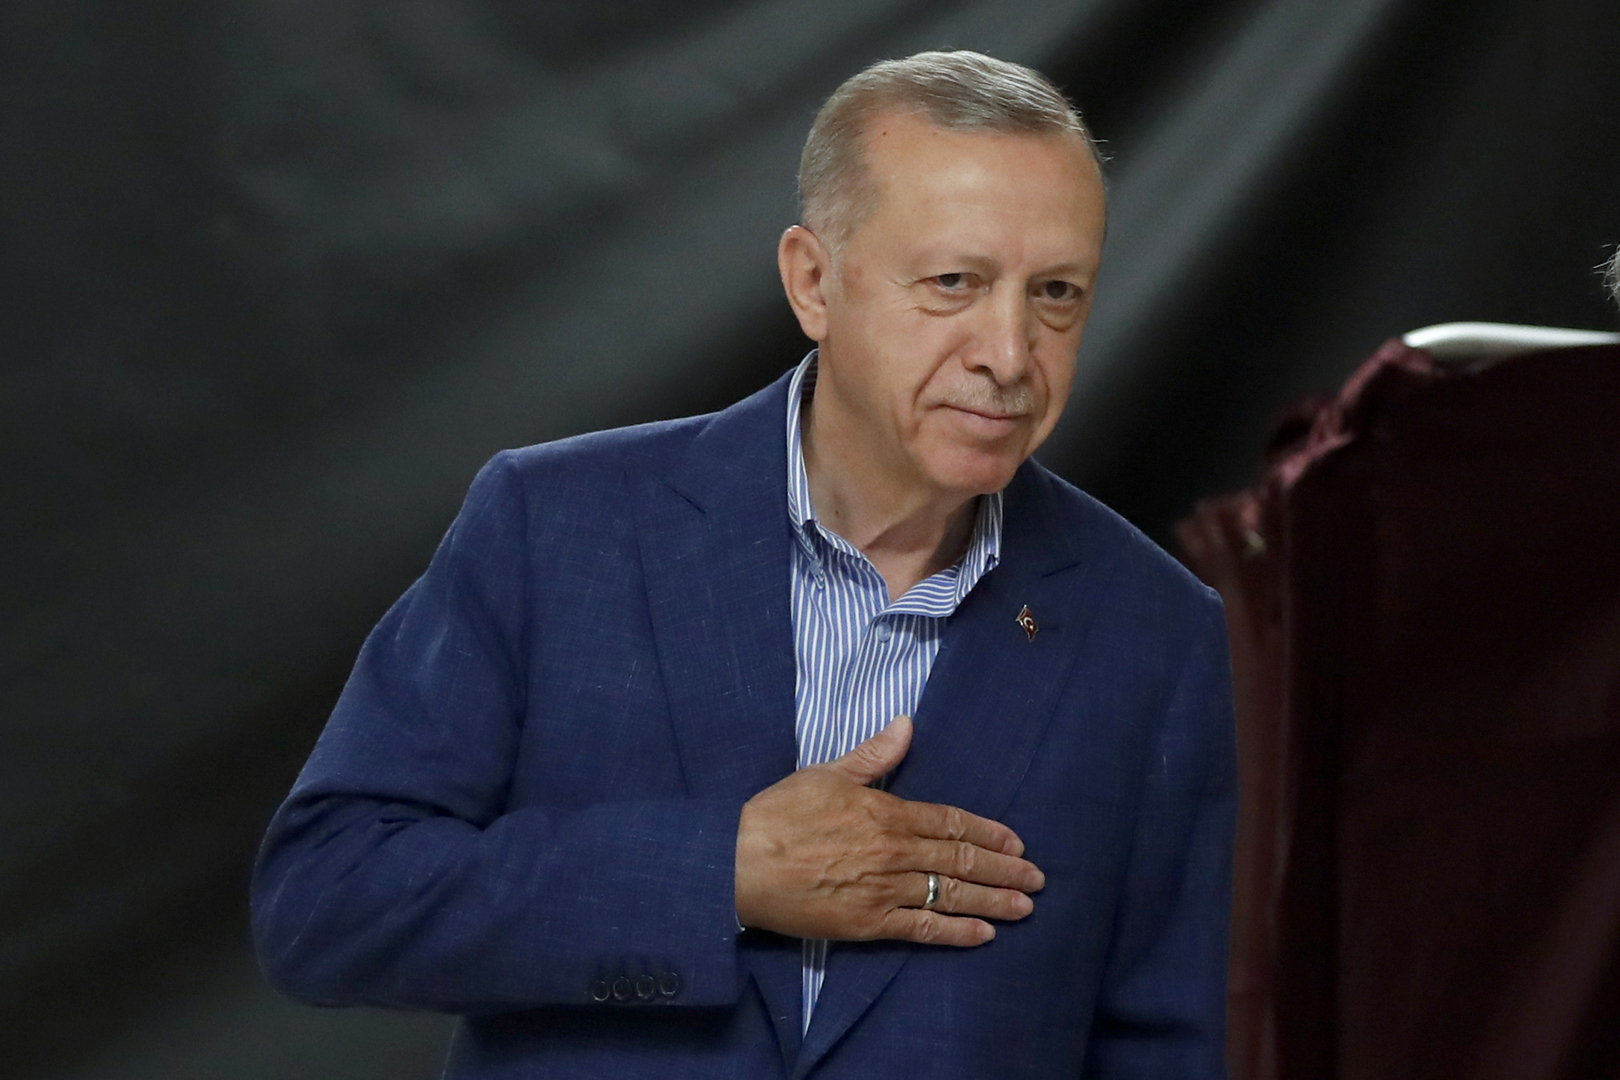 خطاب الرئيس التركي رجب طيب أردوغان في اسطنبول بعد فوزه بانتخابات الرئاسة لولاية ثالثة